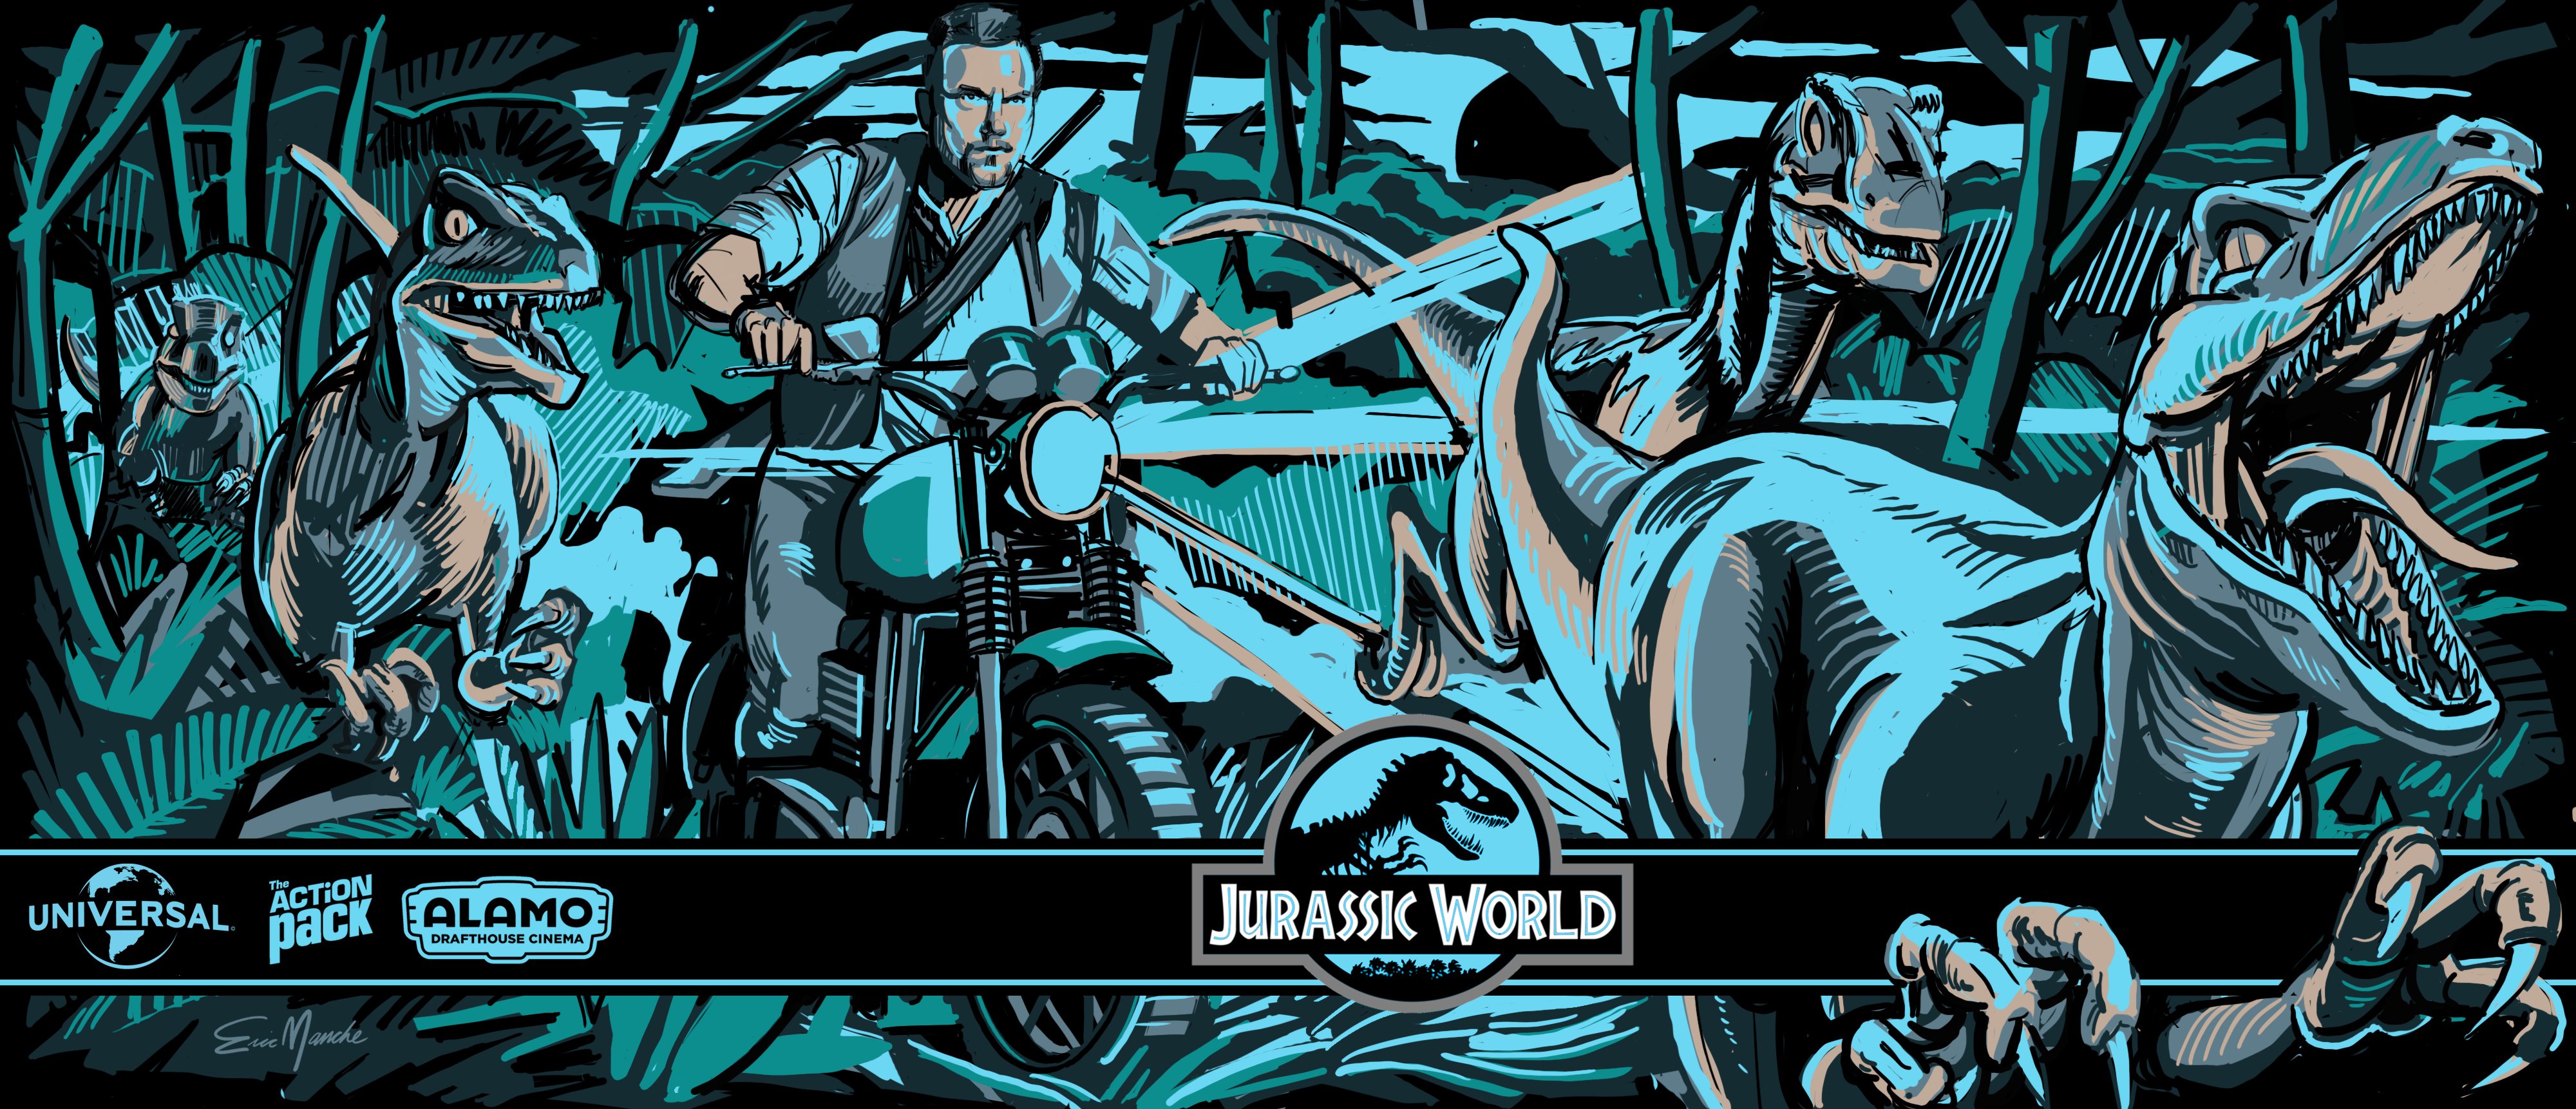 jurassic, World, Adventure, Sci fi, Fantasy, Action, Adventure, Dinosaur, Park, 2015 Wallpaper